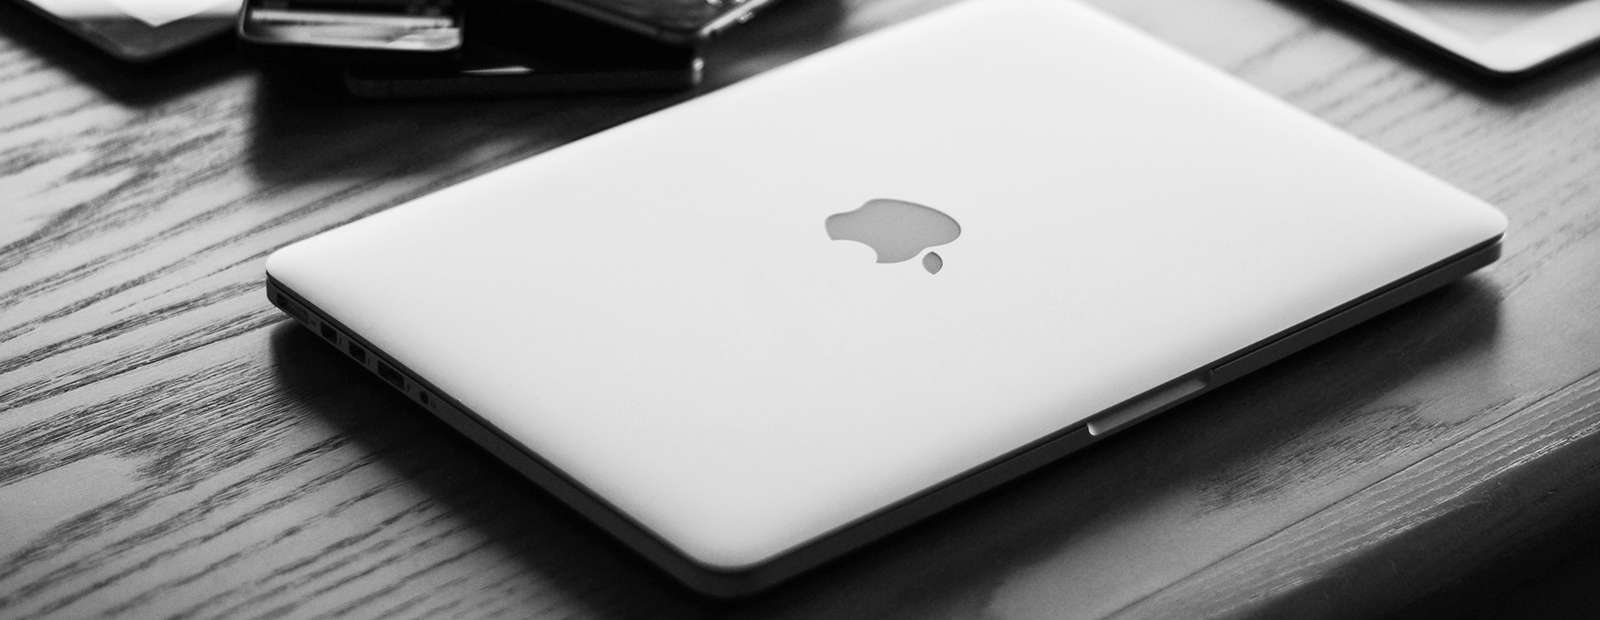 MacBook Air з міні-світлодіодним дисплеєм